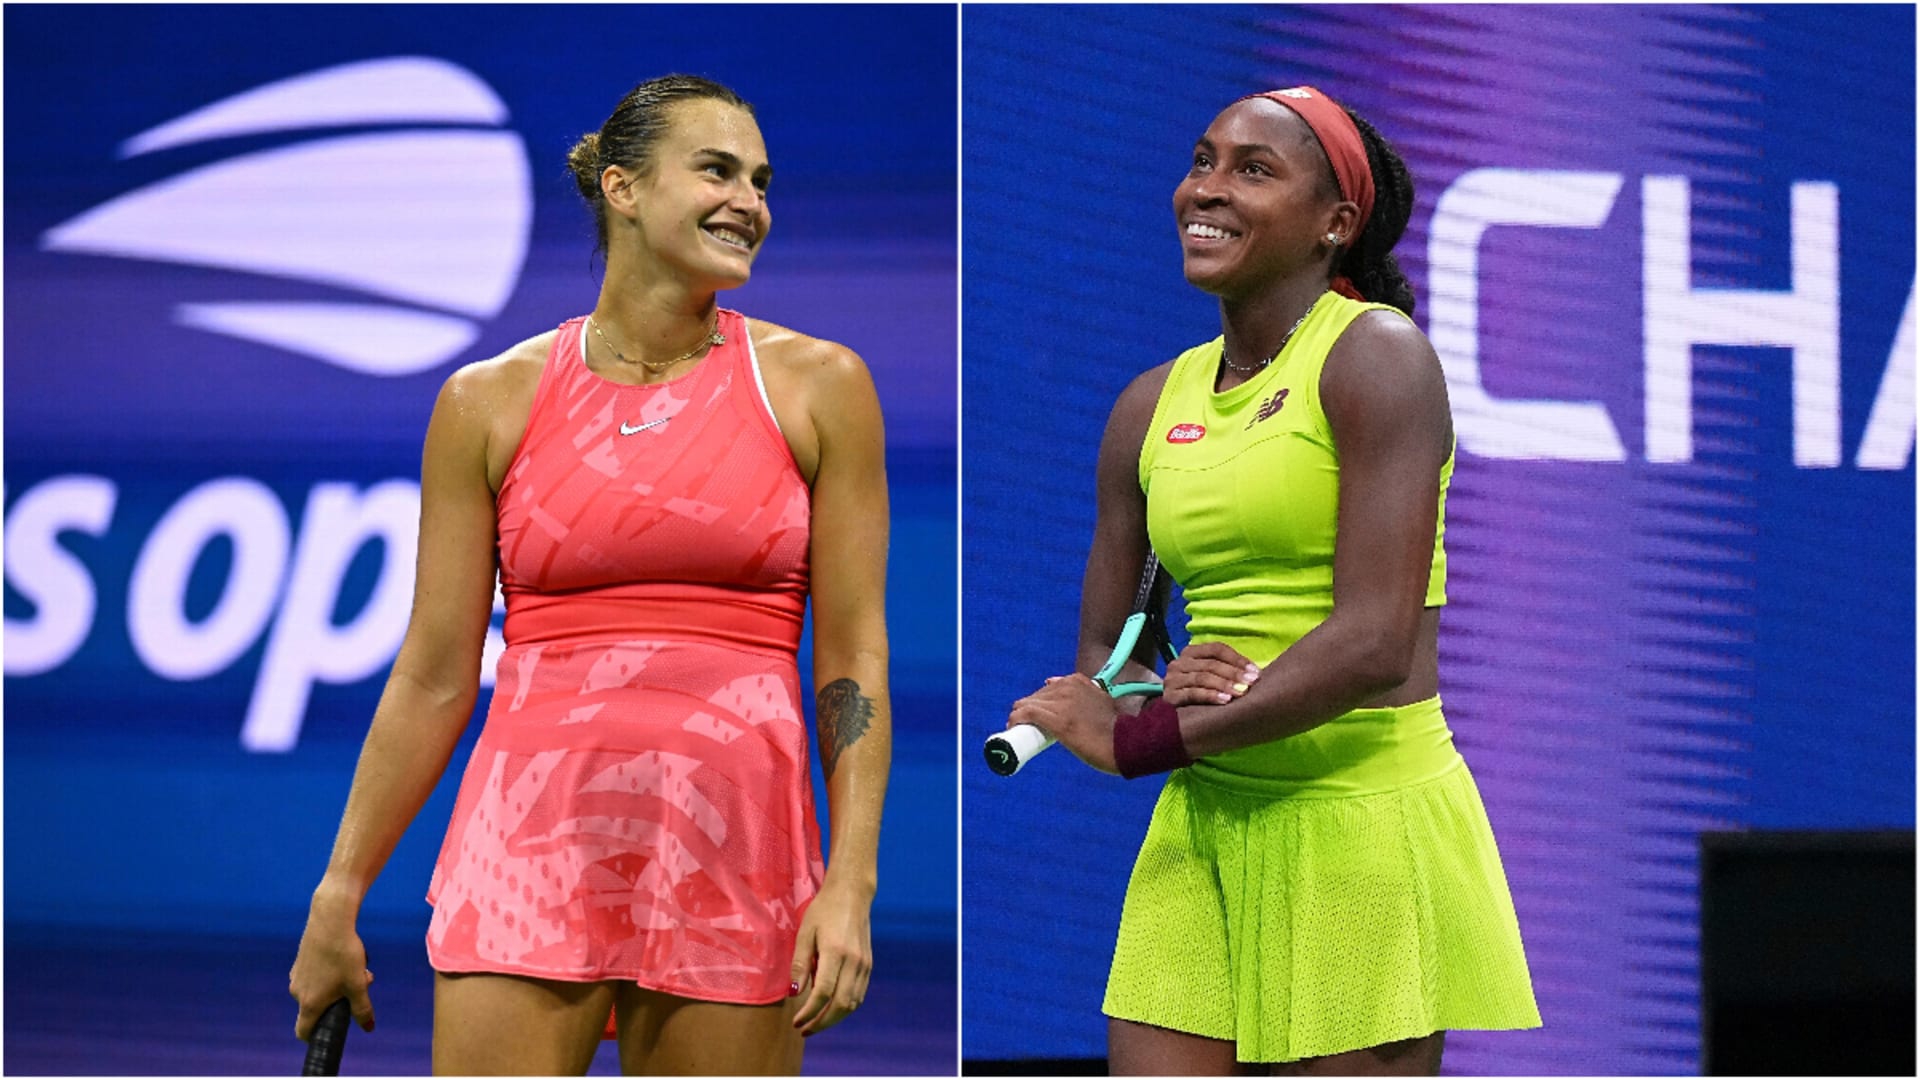 Програмата на US Open: Сабаленка и Гоф определят шампионката при дамите и още един финал